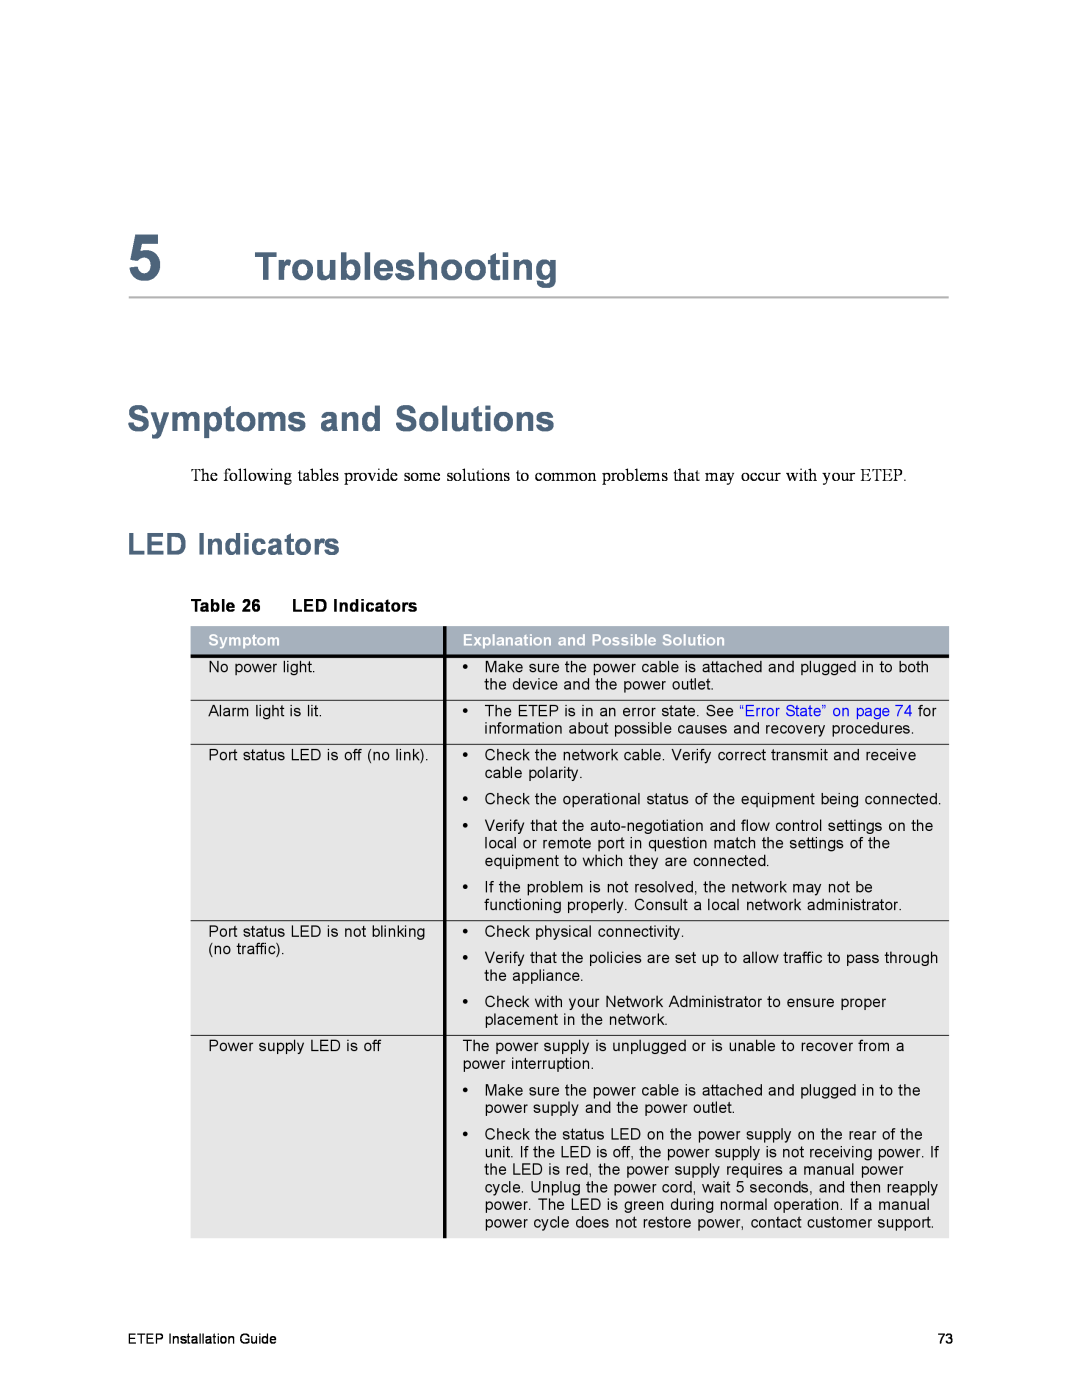 Black Box ET10000A, ET1000A, ET0010A, ET0100A manual Troubleshooting, Symptoms and Solutions, LED Indicators 